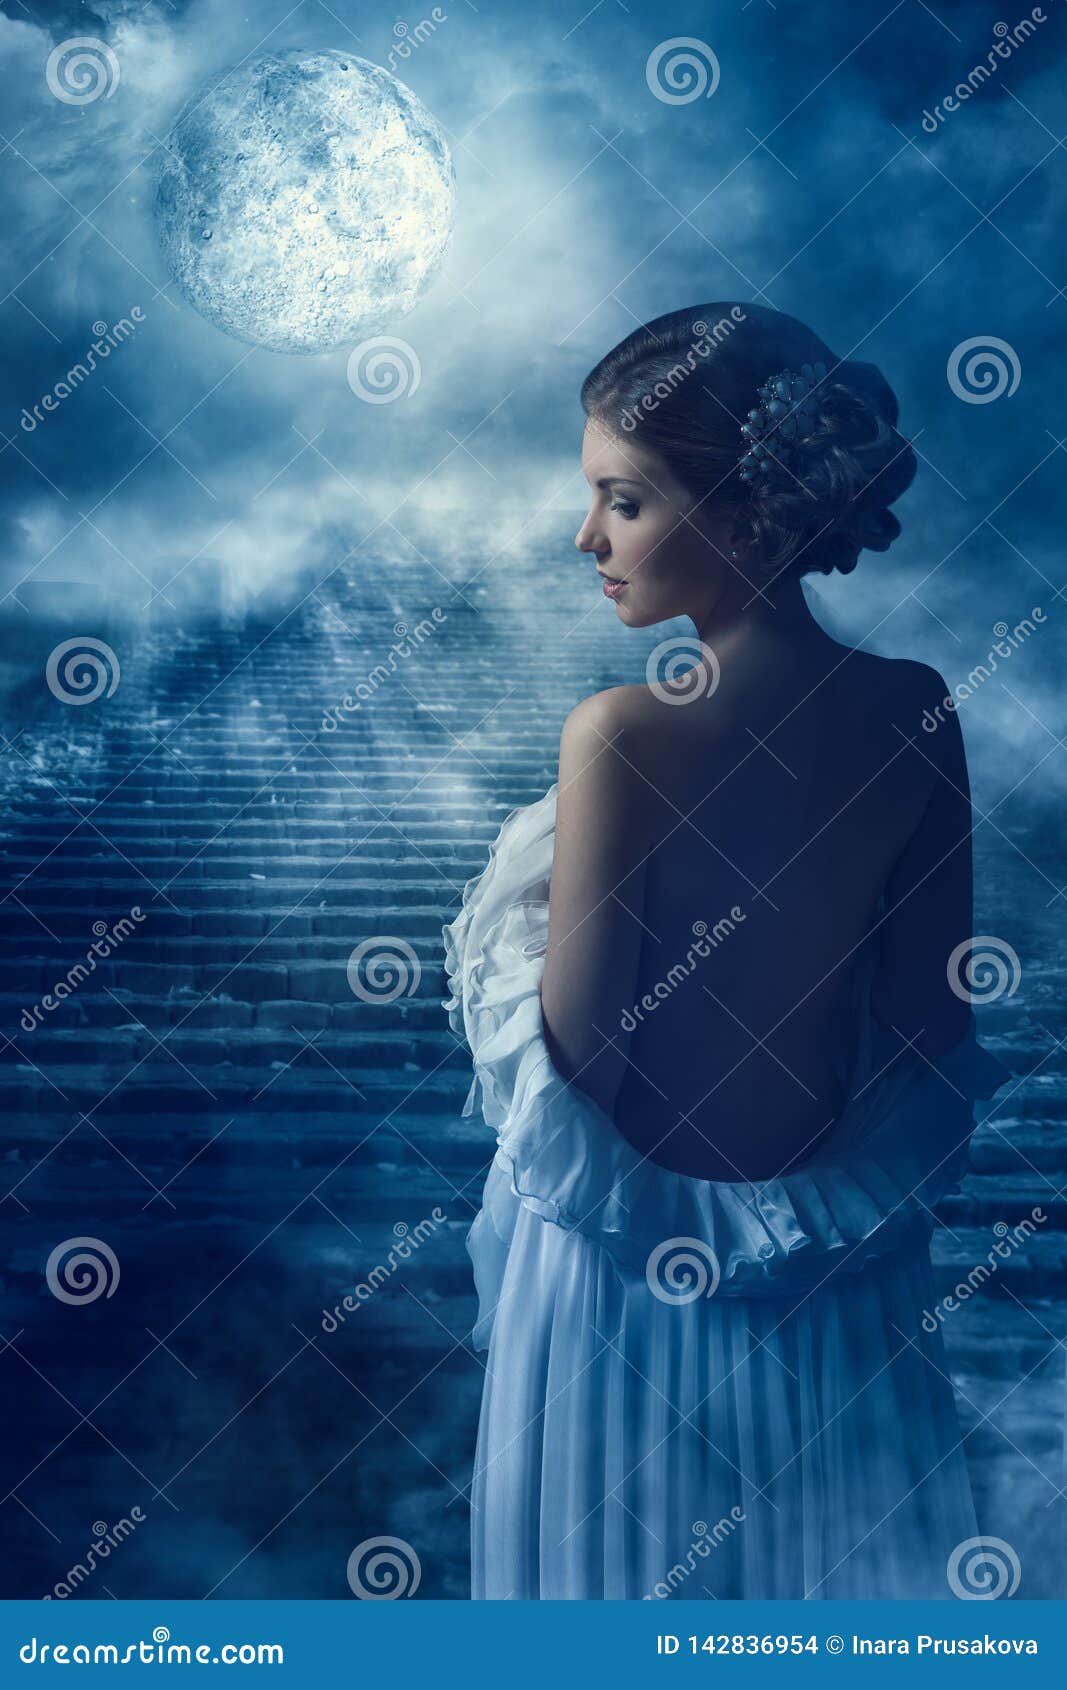 fantasy woman back rear view portrait in moon light, fairy mystic girl in night